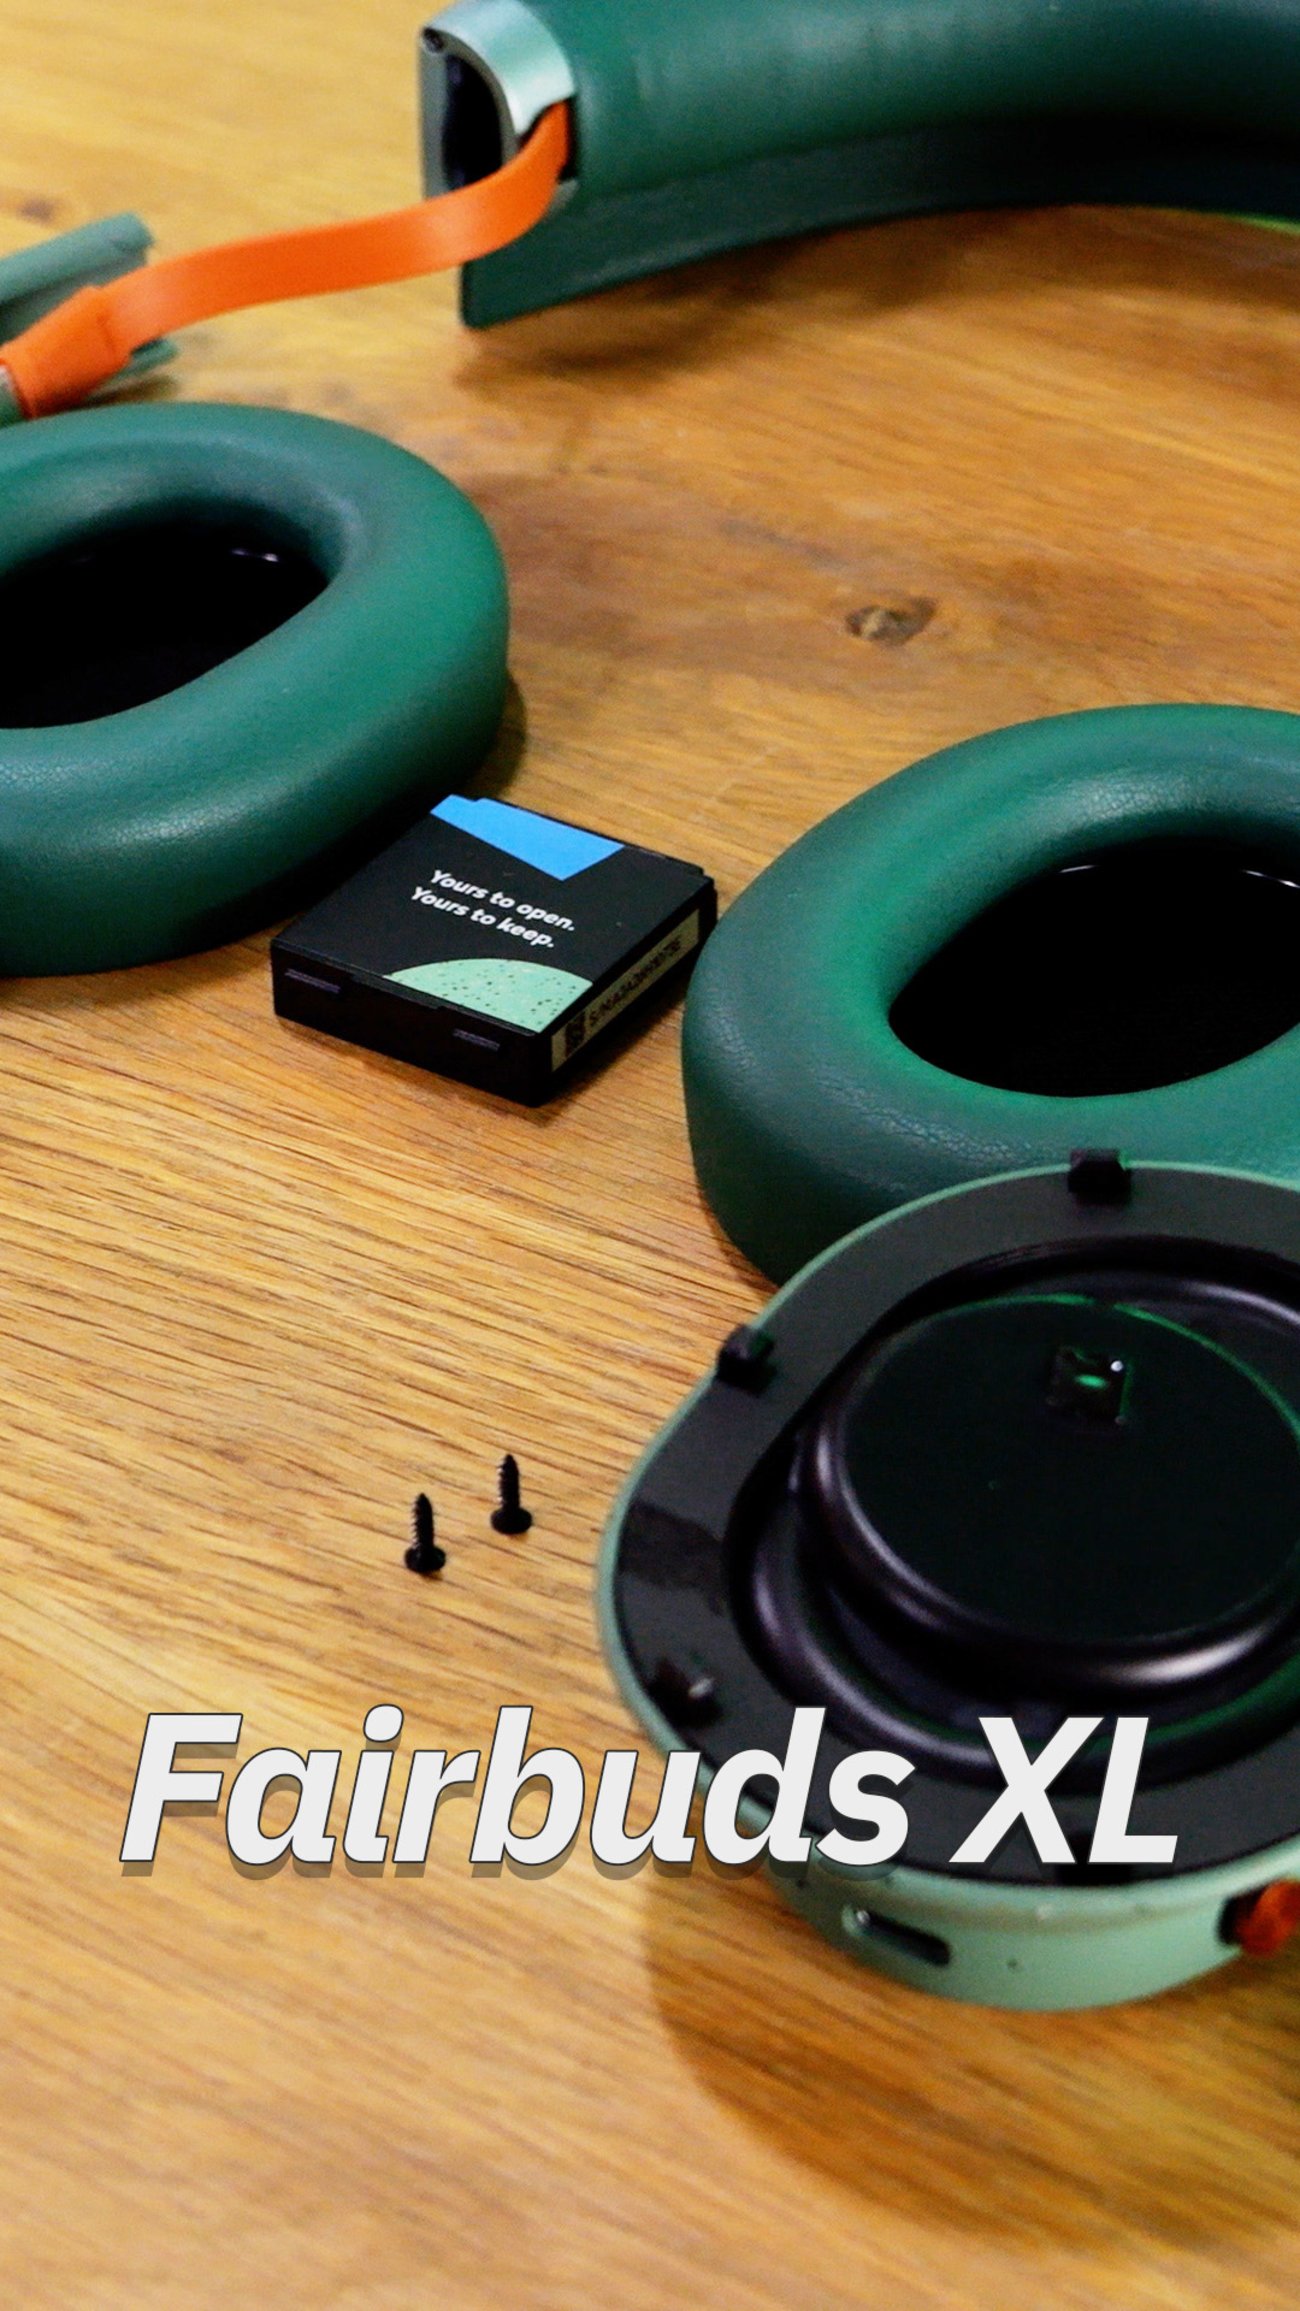 Fairbuds XL: Dieser Kopfhörer lässt sich auseinandernehmen